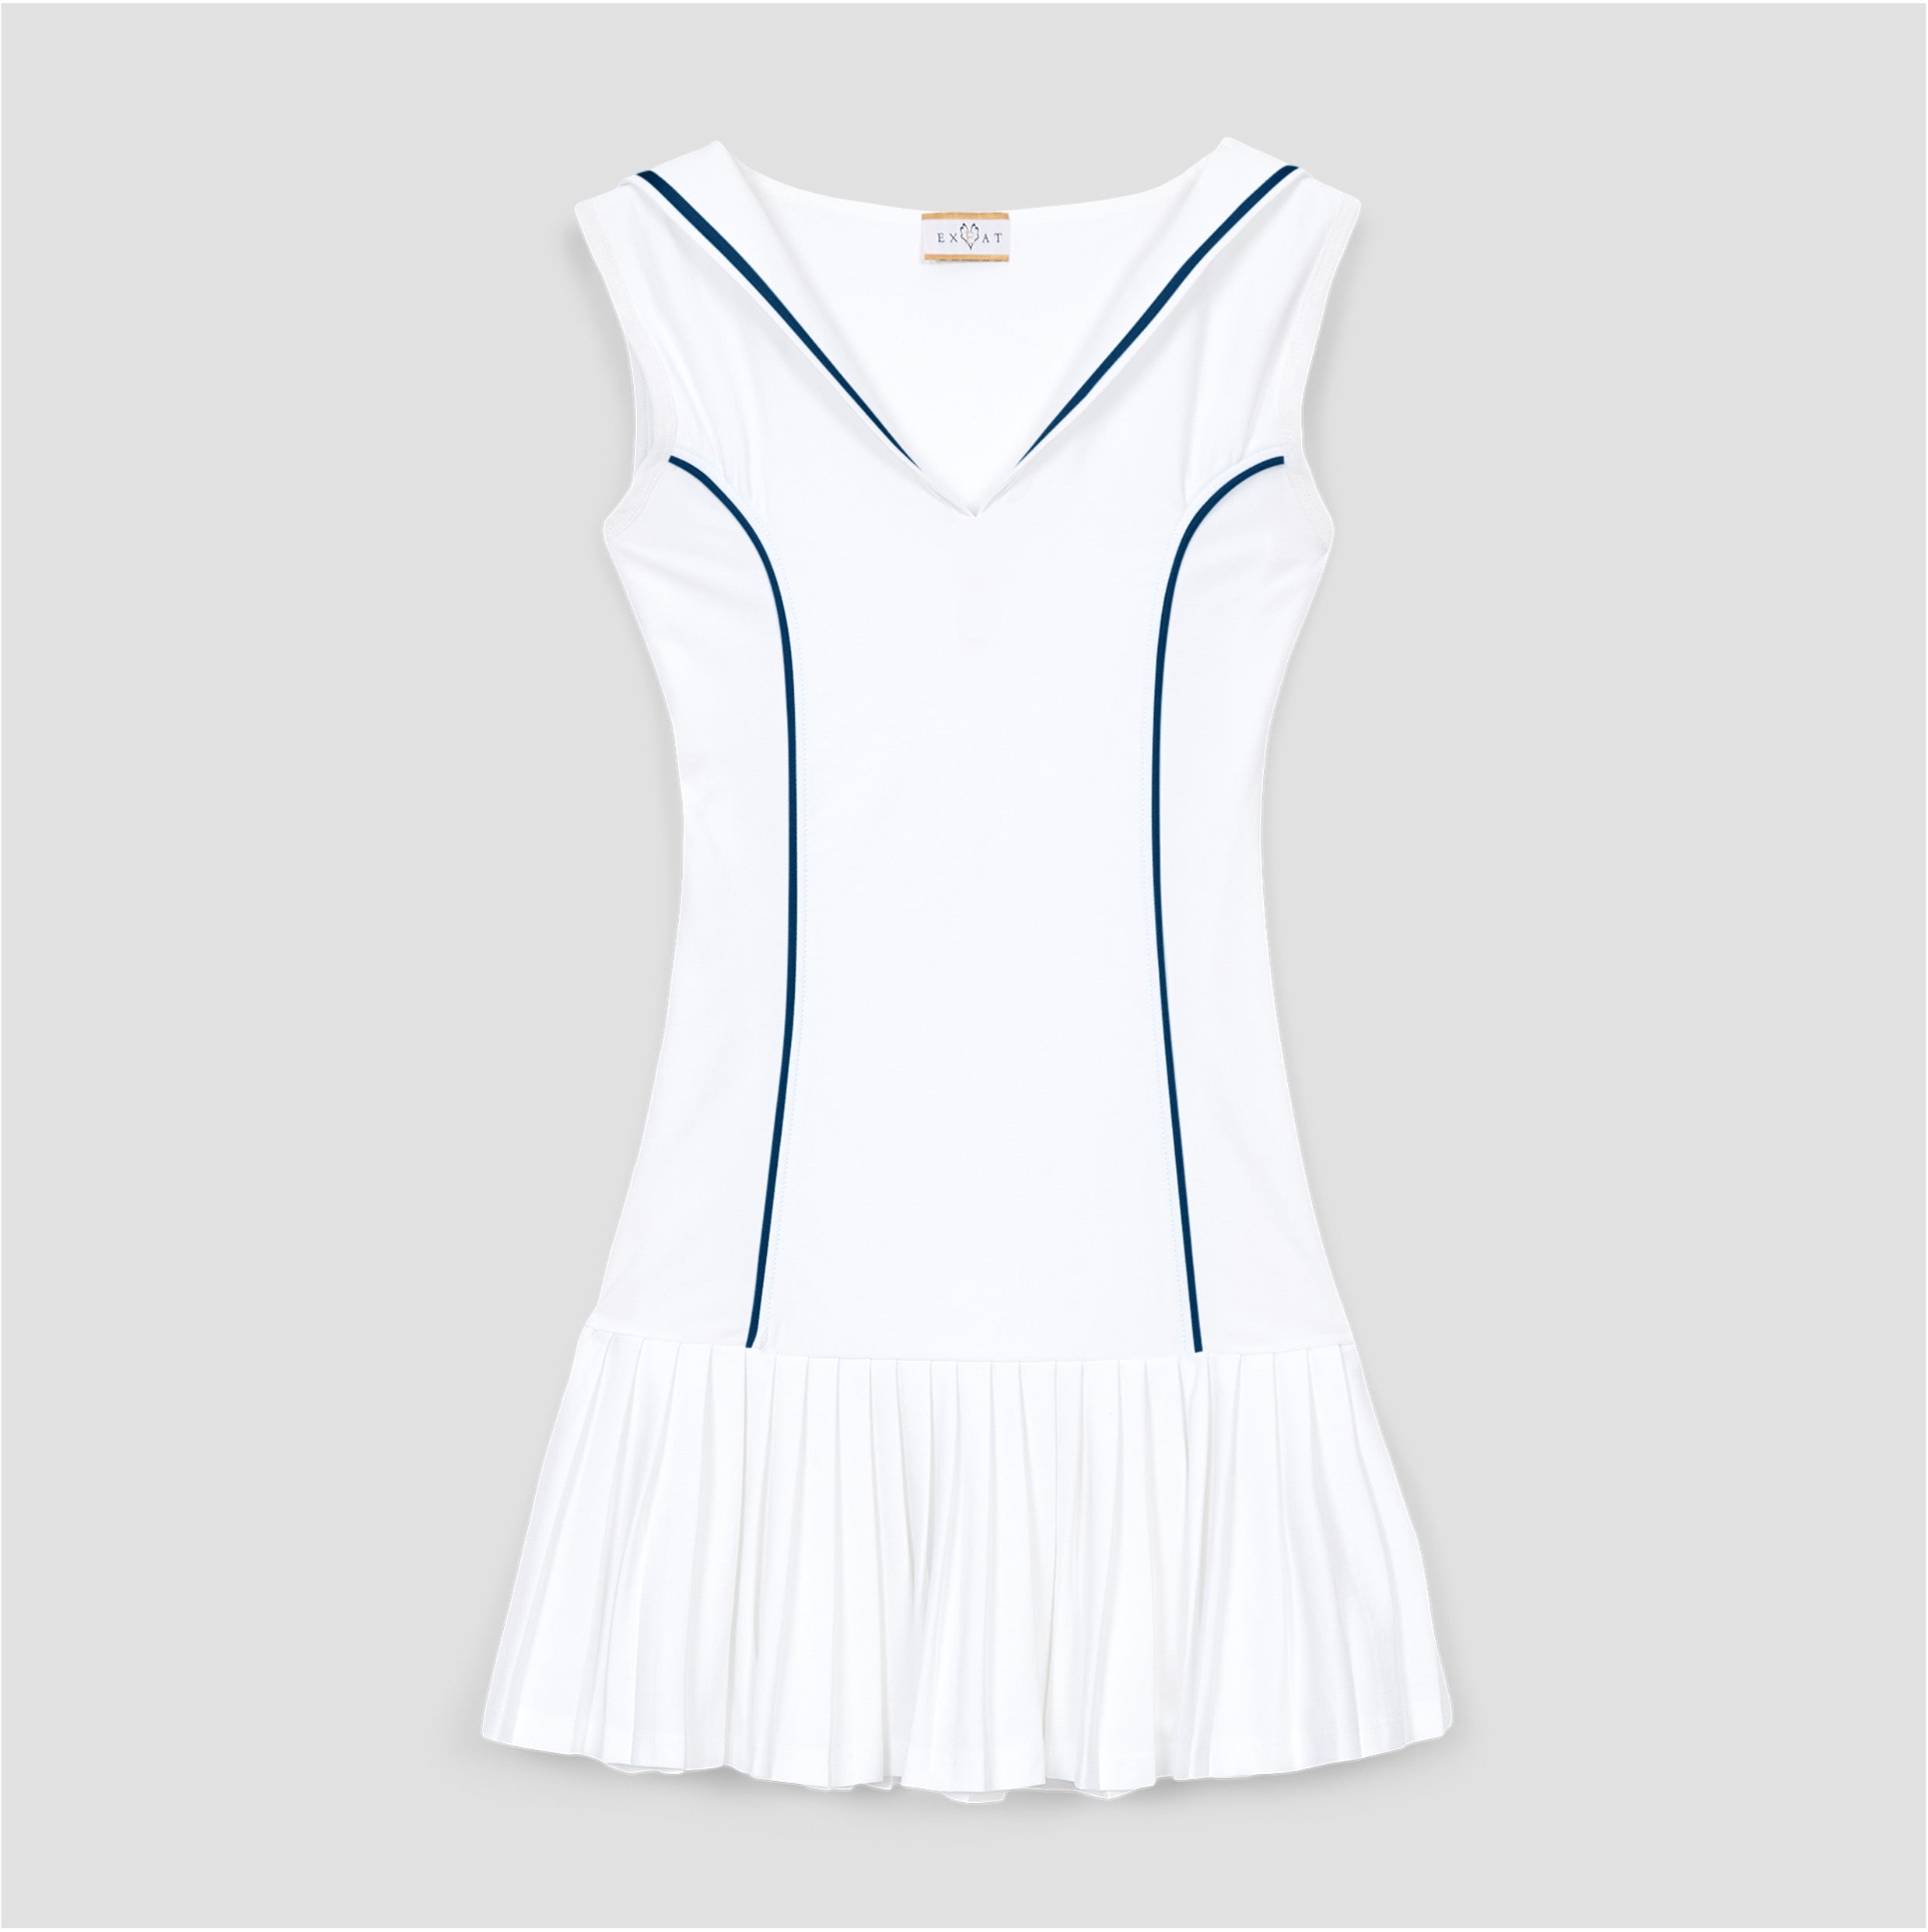 The Duchess Tennis Dress